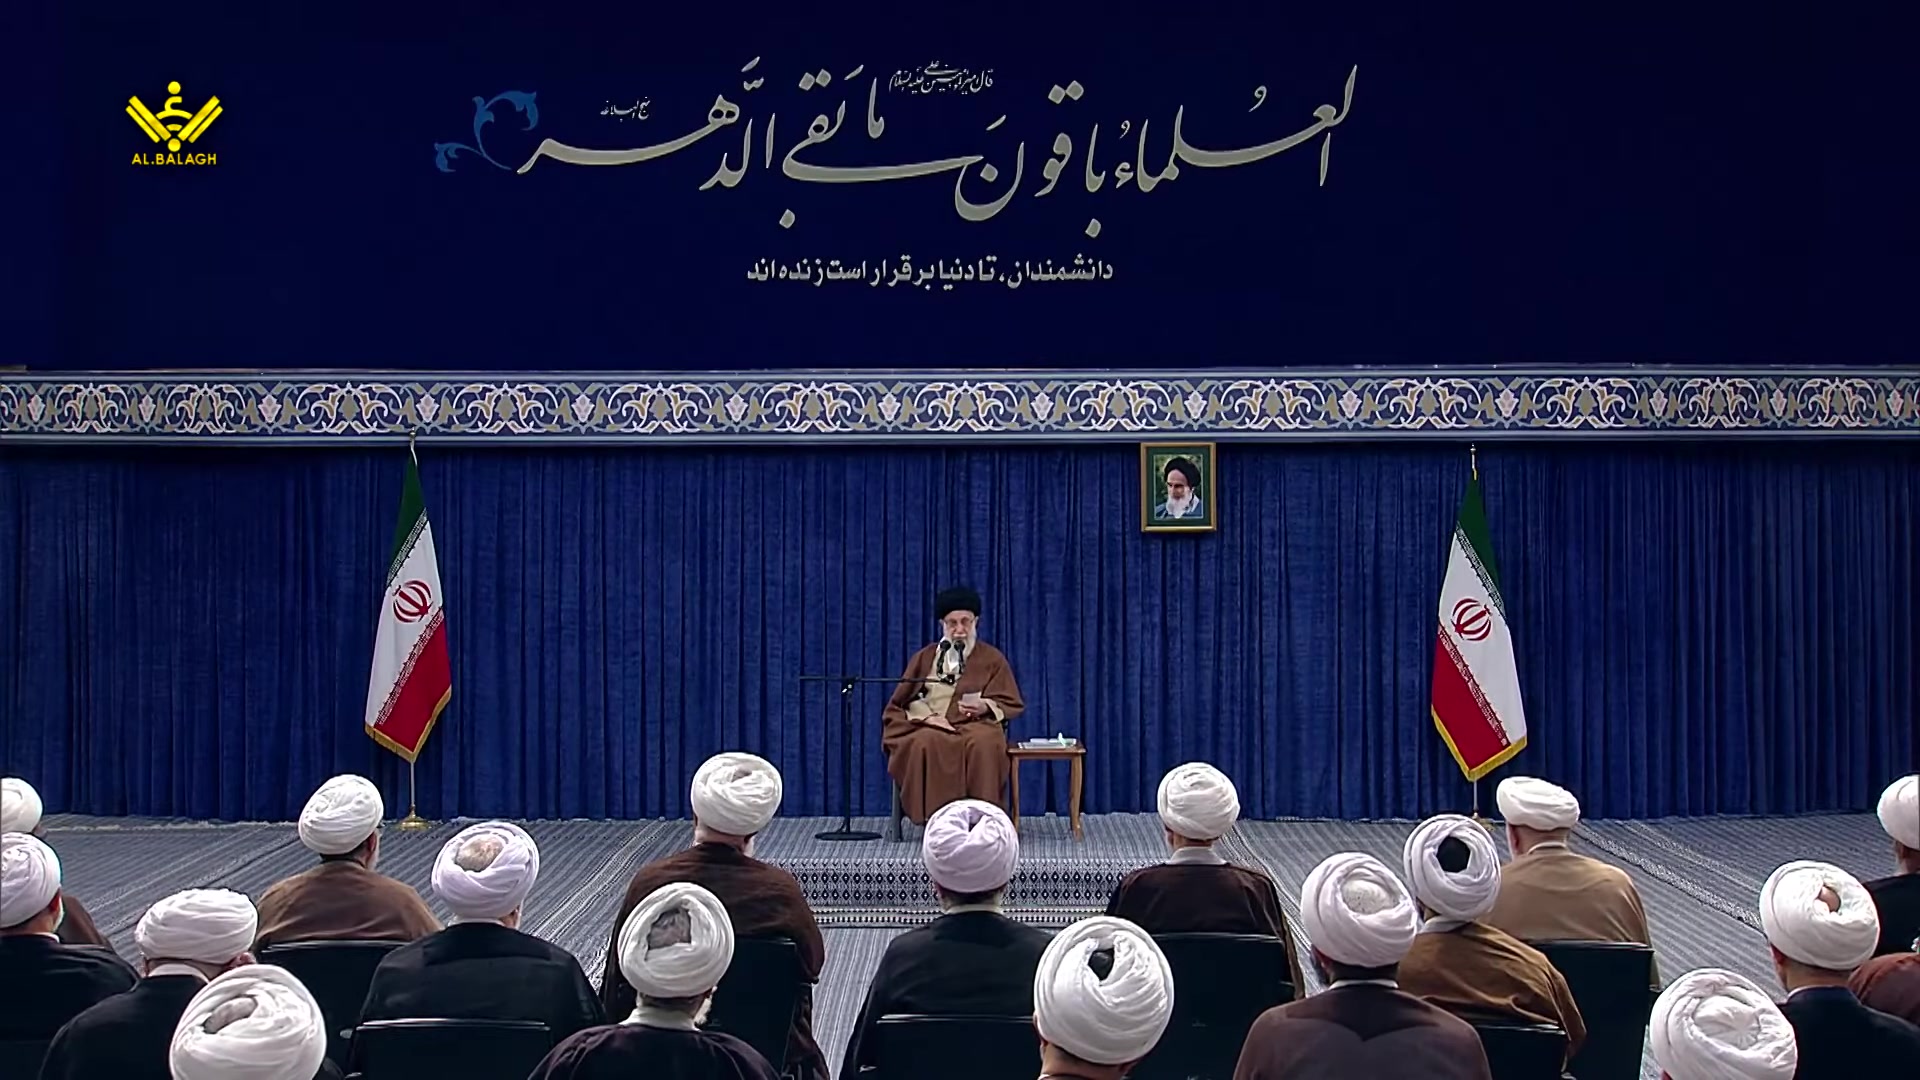 [Speech] Imam Khamenei | Allama Tabatabai | علامہ طباطبائی کانفرنس | Urdu